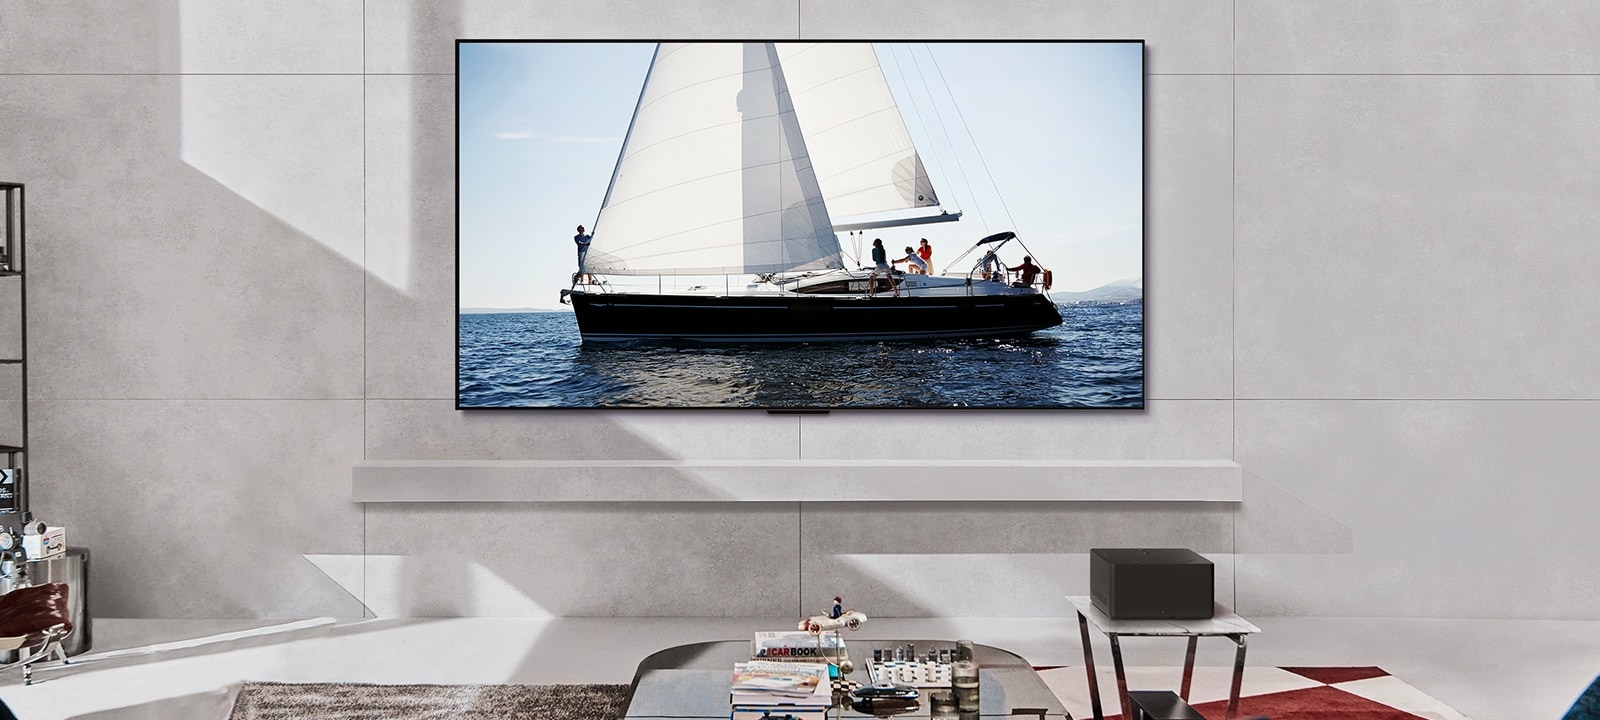 在白天，LG OLED evo M4 和 LG Soundbar 放置在現代生活空間中。海洋中帆船的螢幕影像，其以理想的亮度水平顯示。